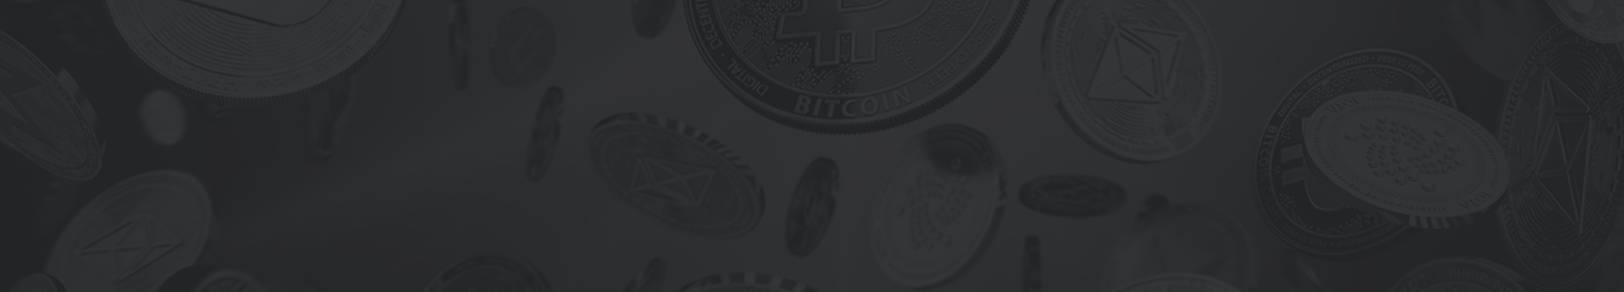 Bitcoin Machine - Etkö ole vieläkään liittynyt Bitcoin Machine-palveluun?